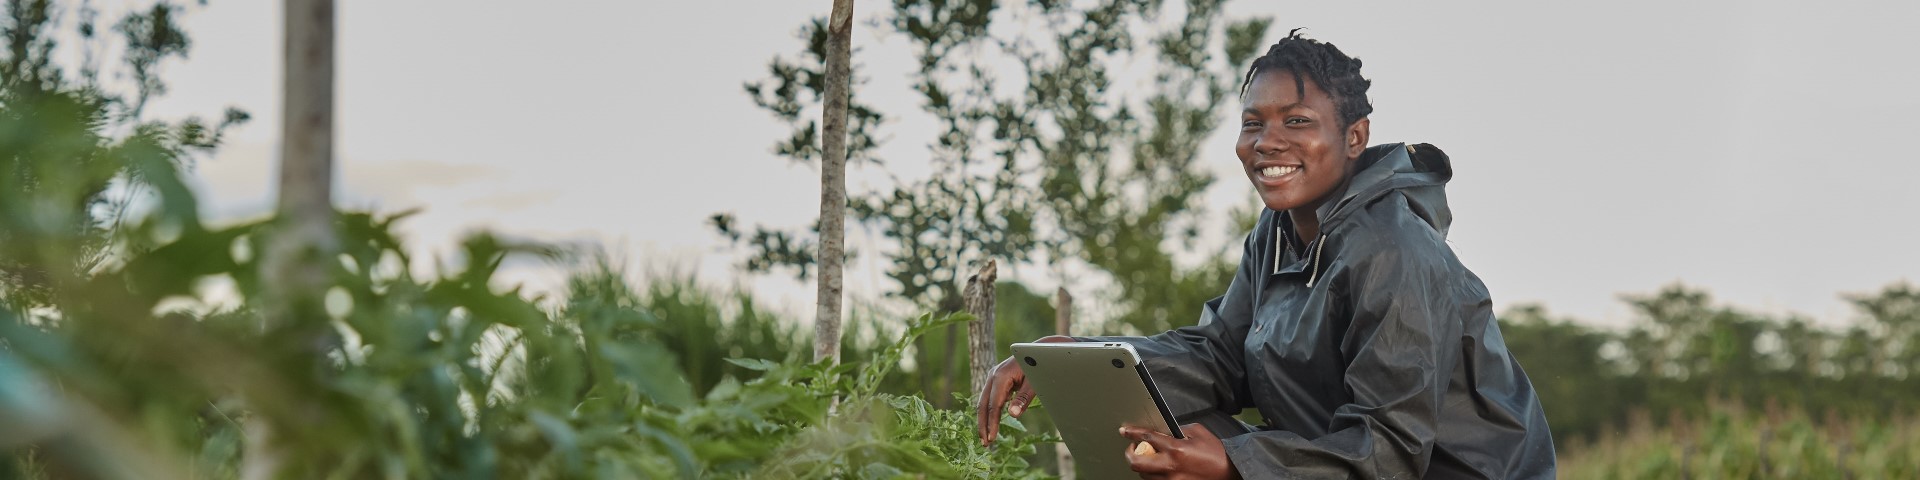 Une personne est accroupie dans un champ et regarde une tablette.